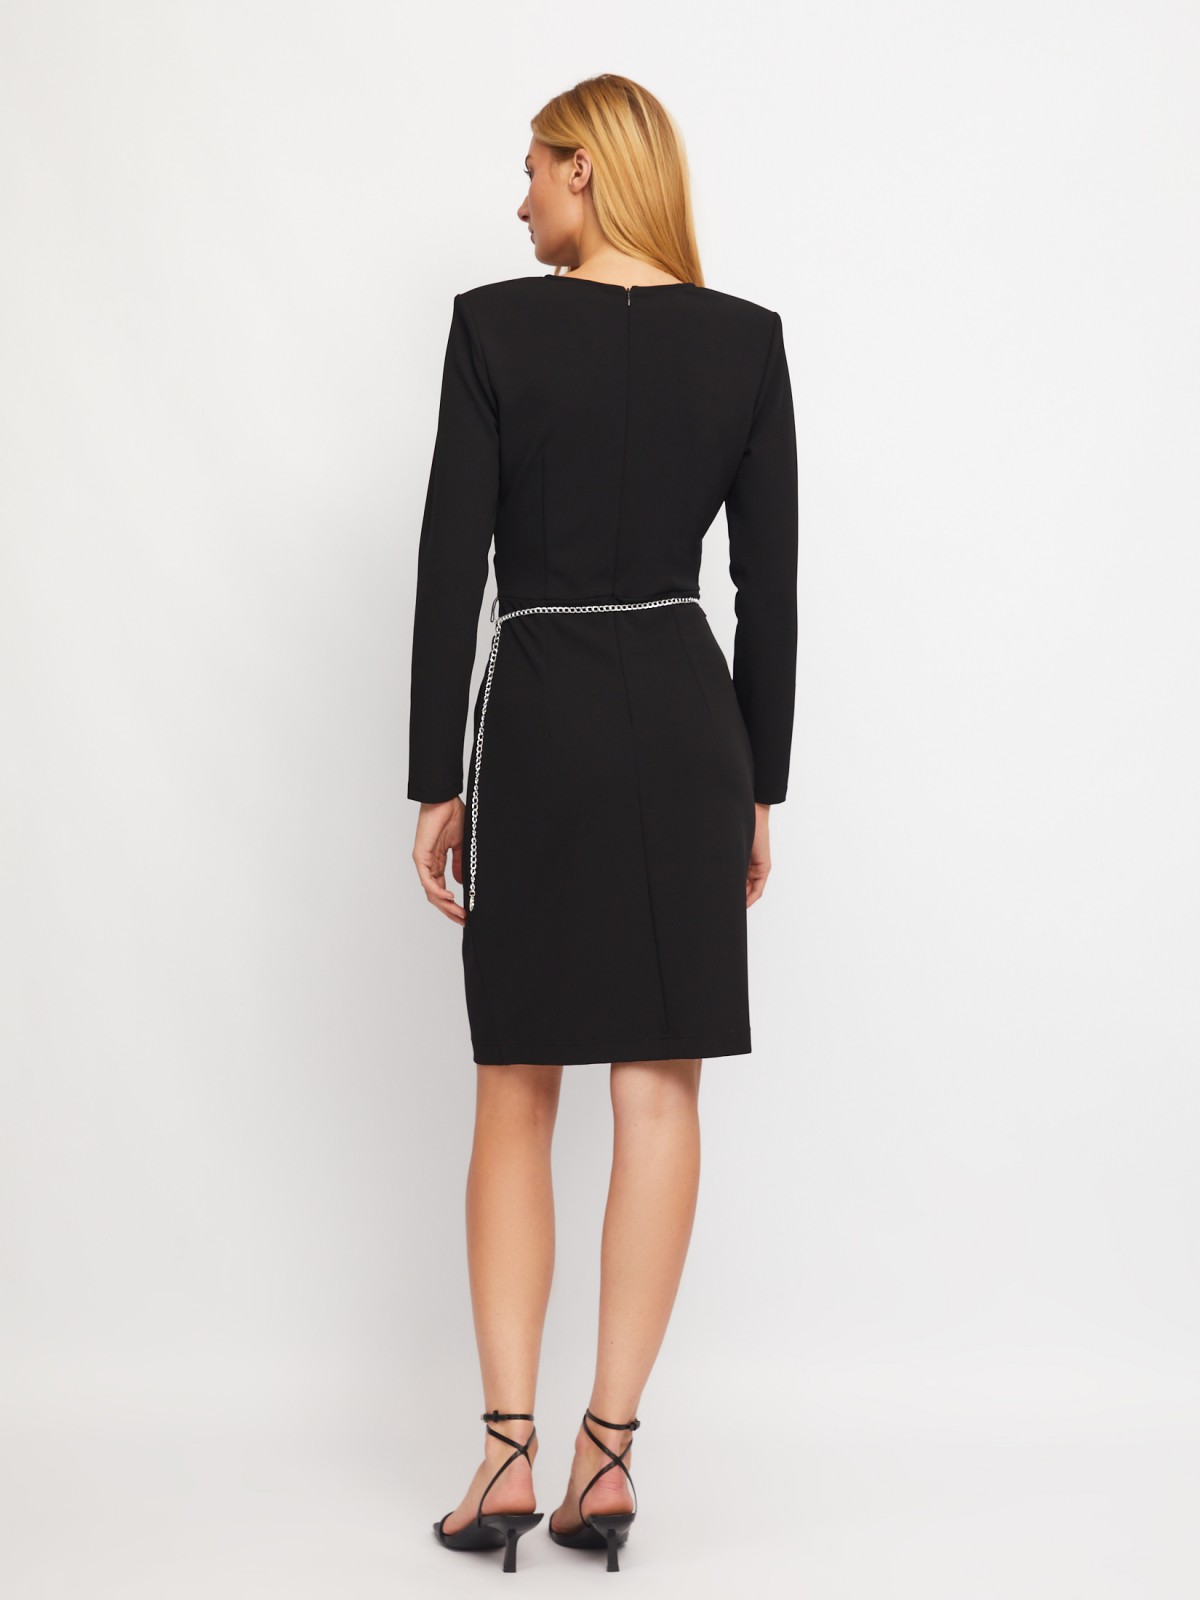 Платье с драпировкой, вырезом на запах и поясом-цепочкой zolla 024118135223, цвет черный, размер XS - фото 6